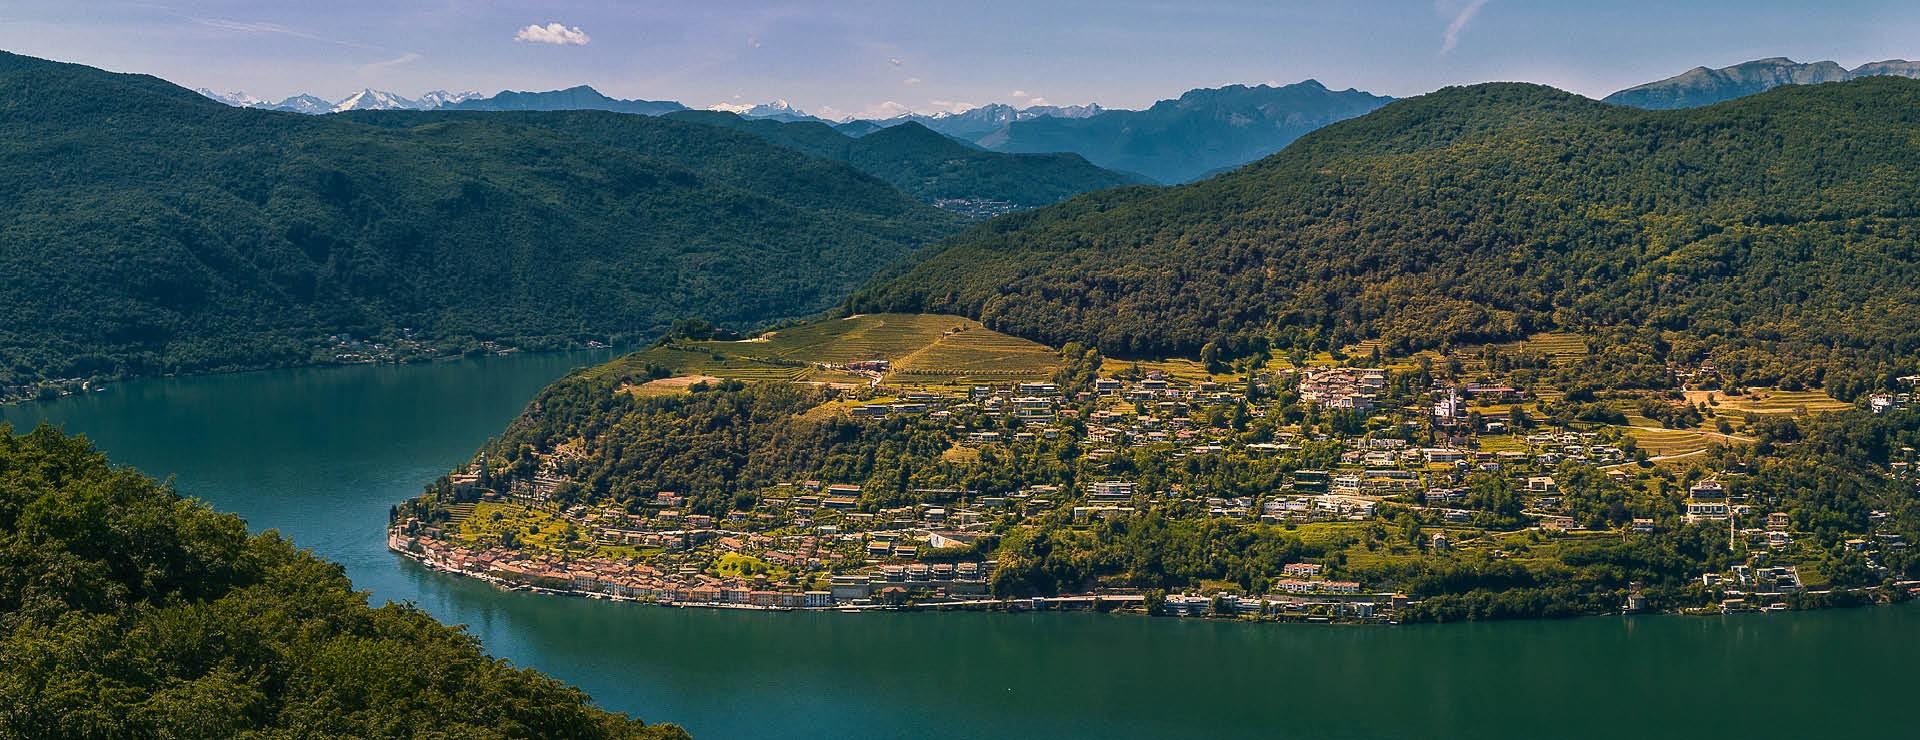 Nuovi fondi di investimento “Made in Ticino”